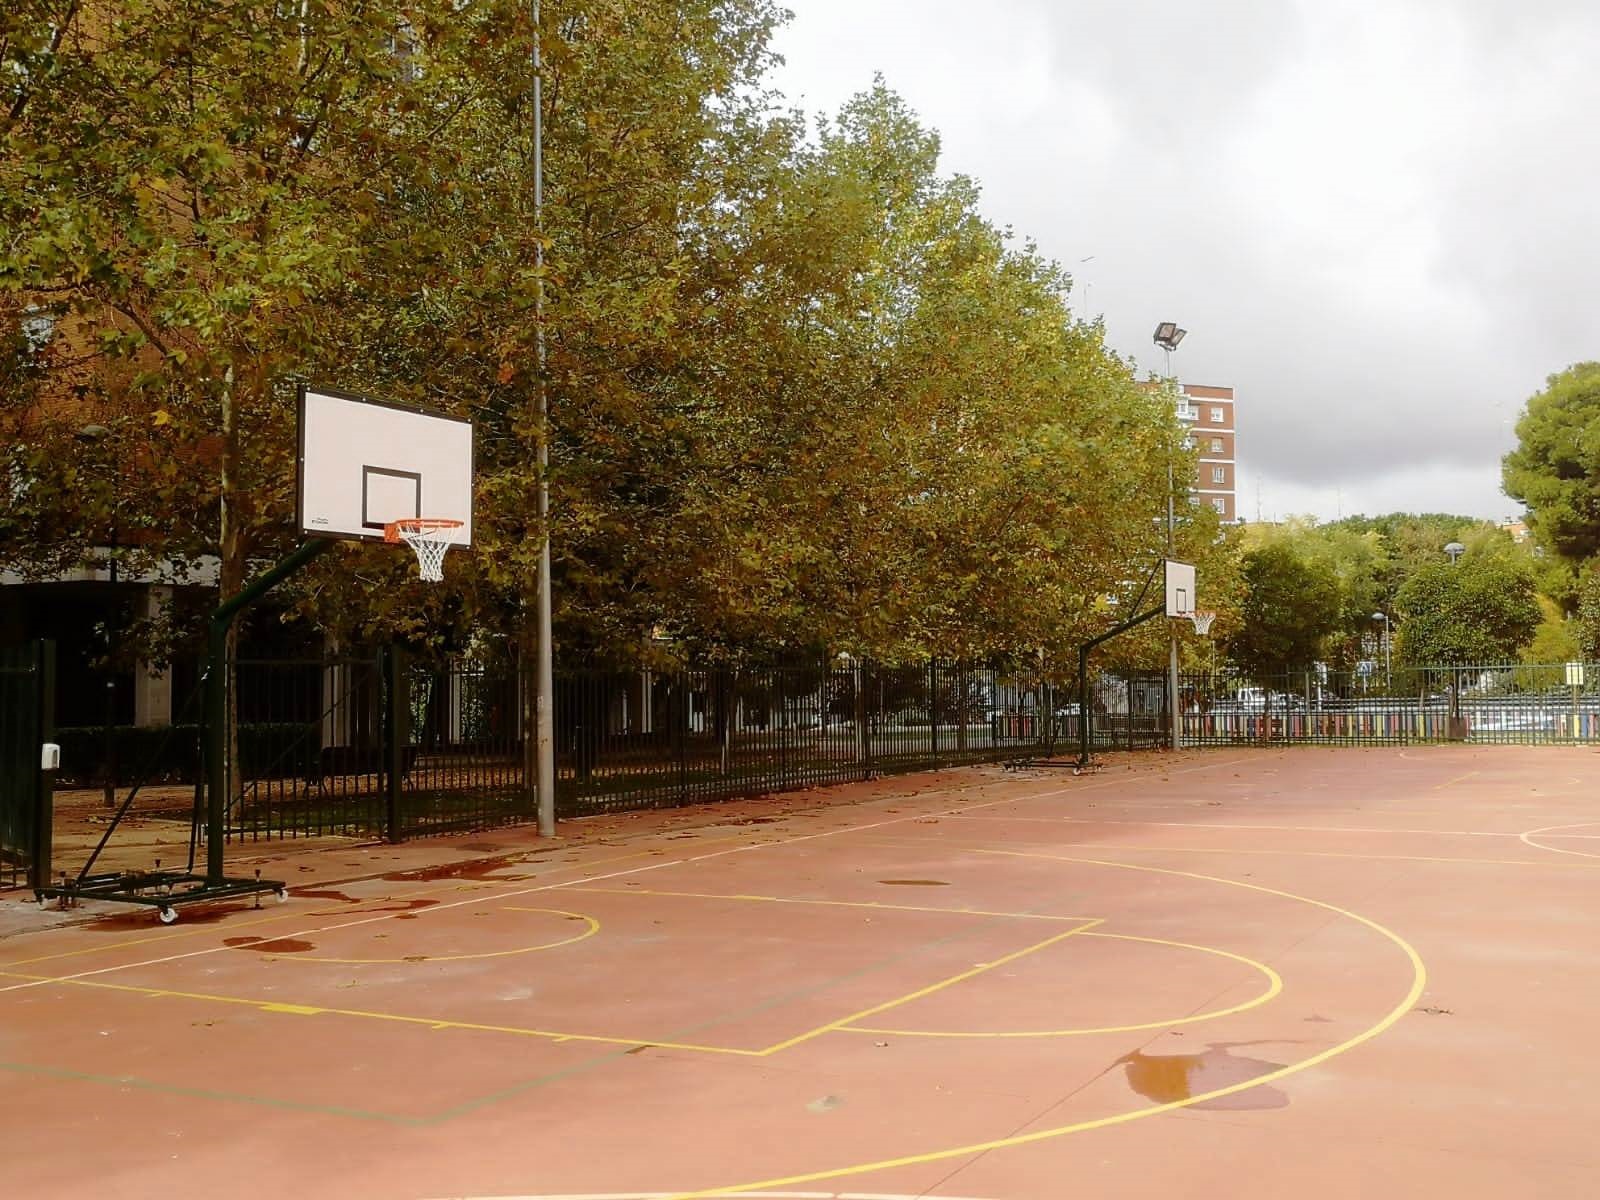 ALCORCÓN) Deportes adapta la pista exterior del polideportivo Los Cantos  para instalar dos canchas de baloncesto - alcabodelacalle